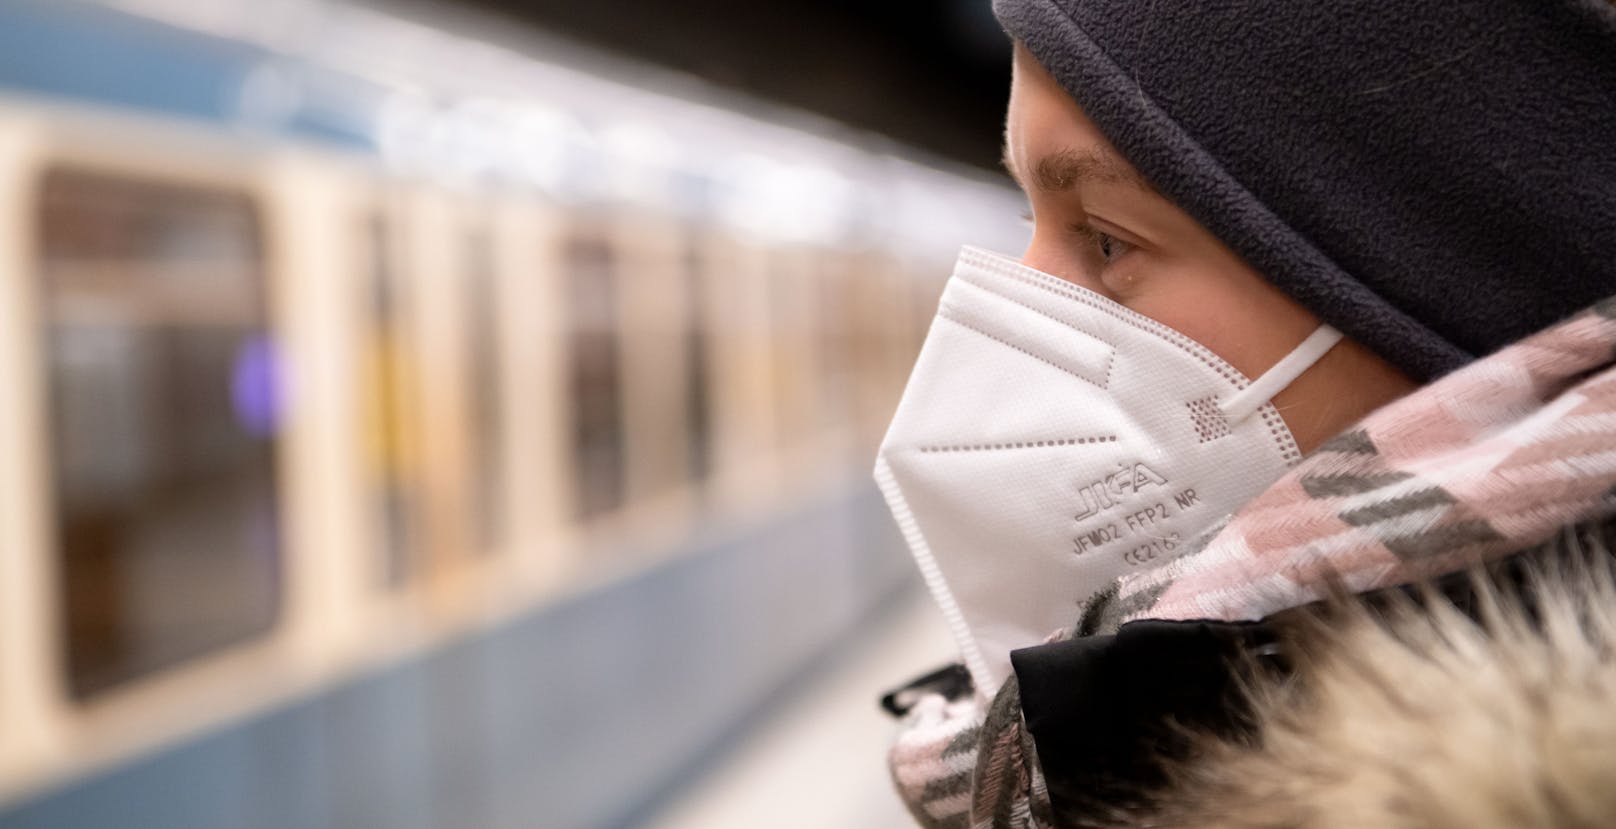 Ein Experte erachtet FFP2-Masken in Zug, U-Bahn und Geschäften als sinnvoll.